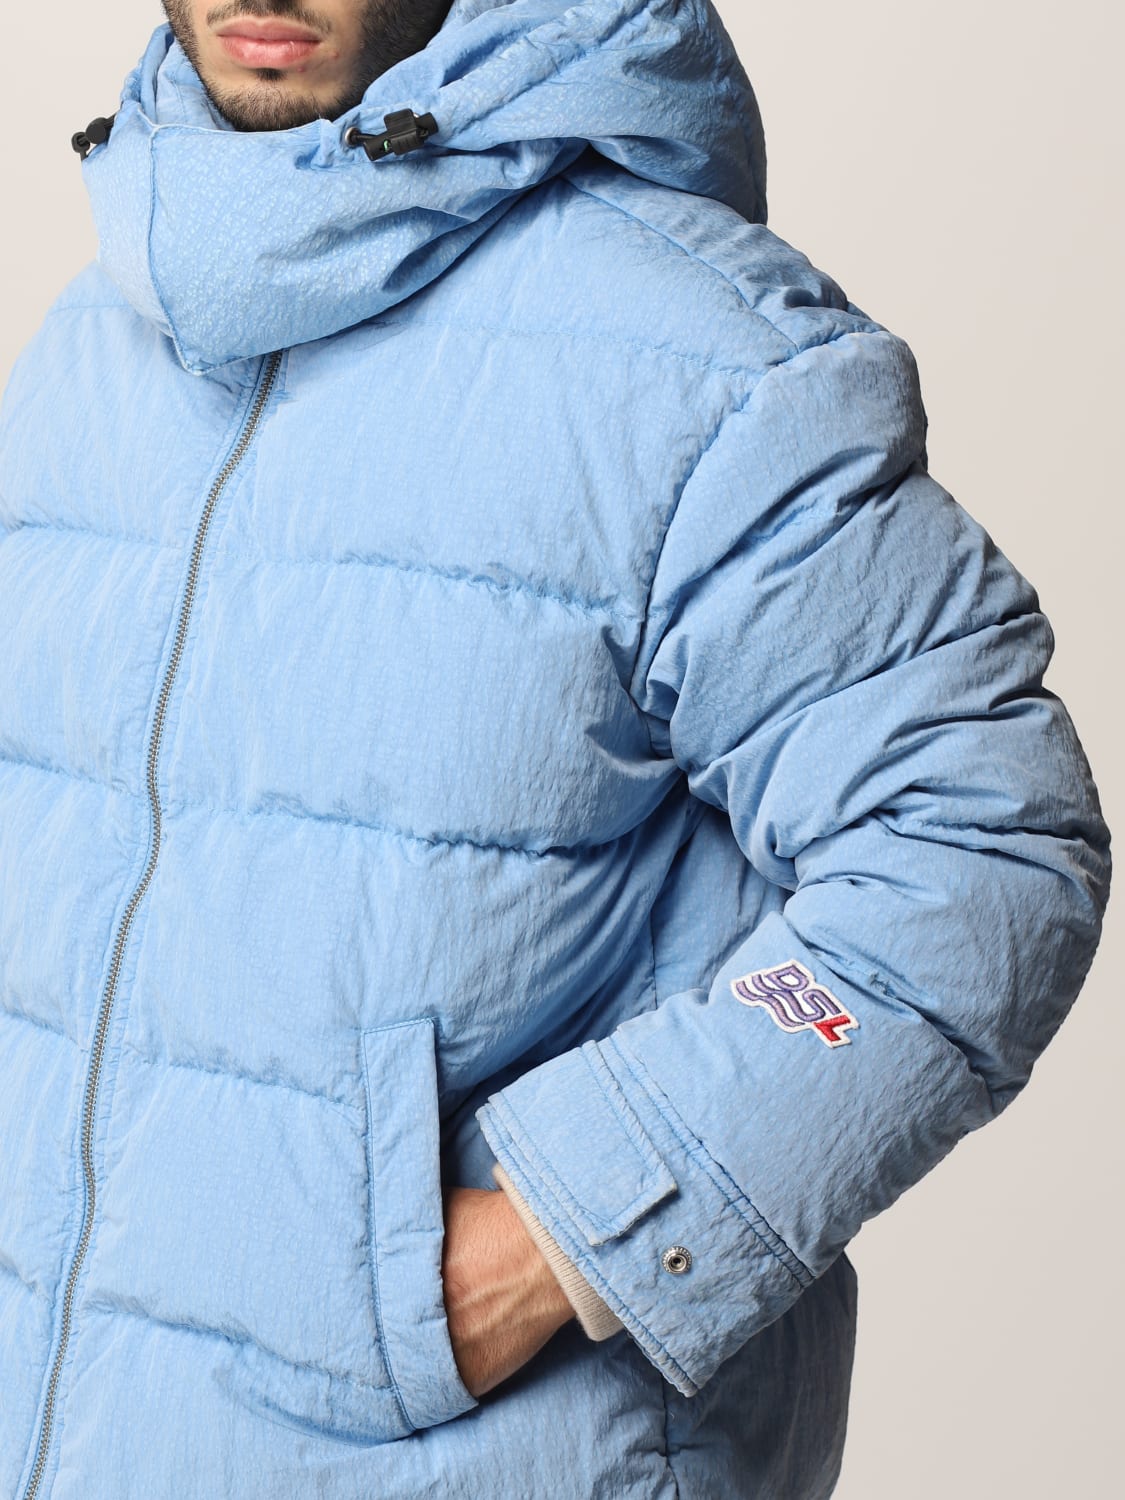 DIESEL: Padded jacket with hood - Sky Blue | Diesel jacket A03057 0IDAK  online at GIGLIO.COM